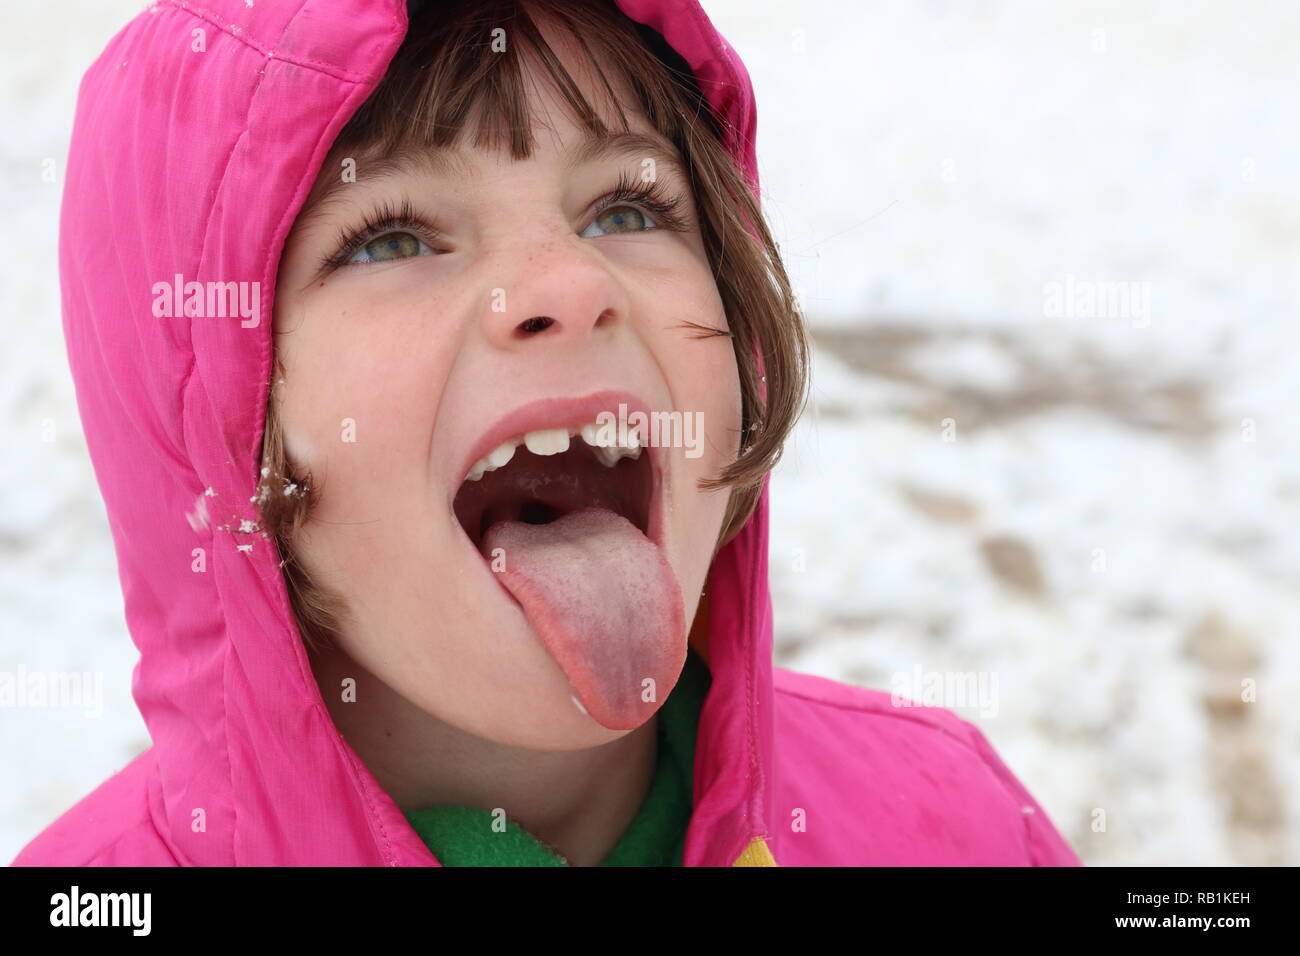 Ritratto di una giovane ragazza nella neve cercando di catturare un fiocco di neve sulla sua lingua Foto Stock